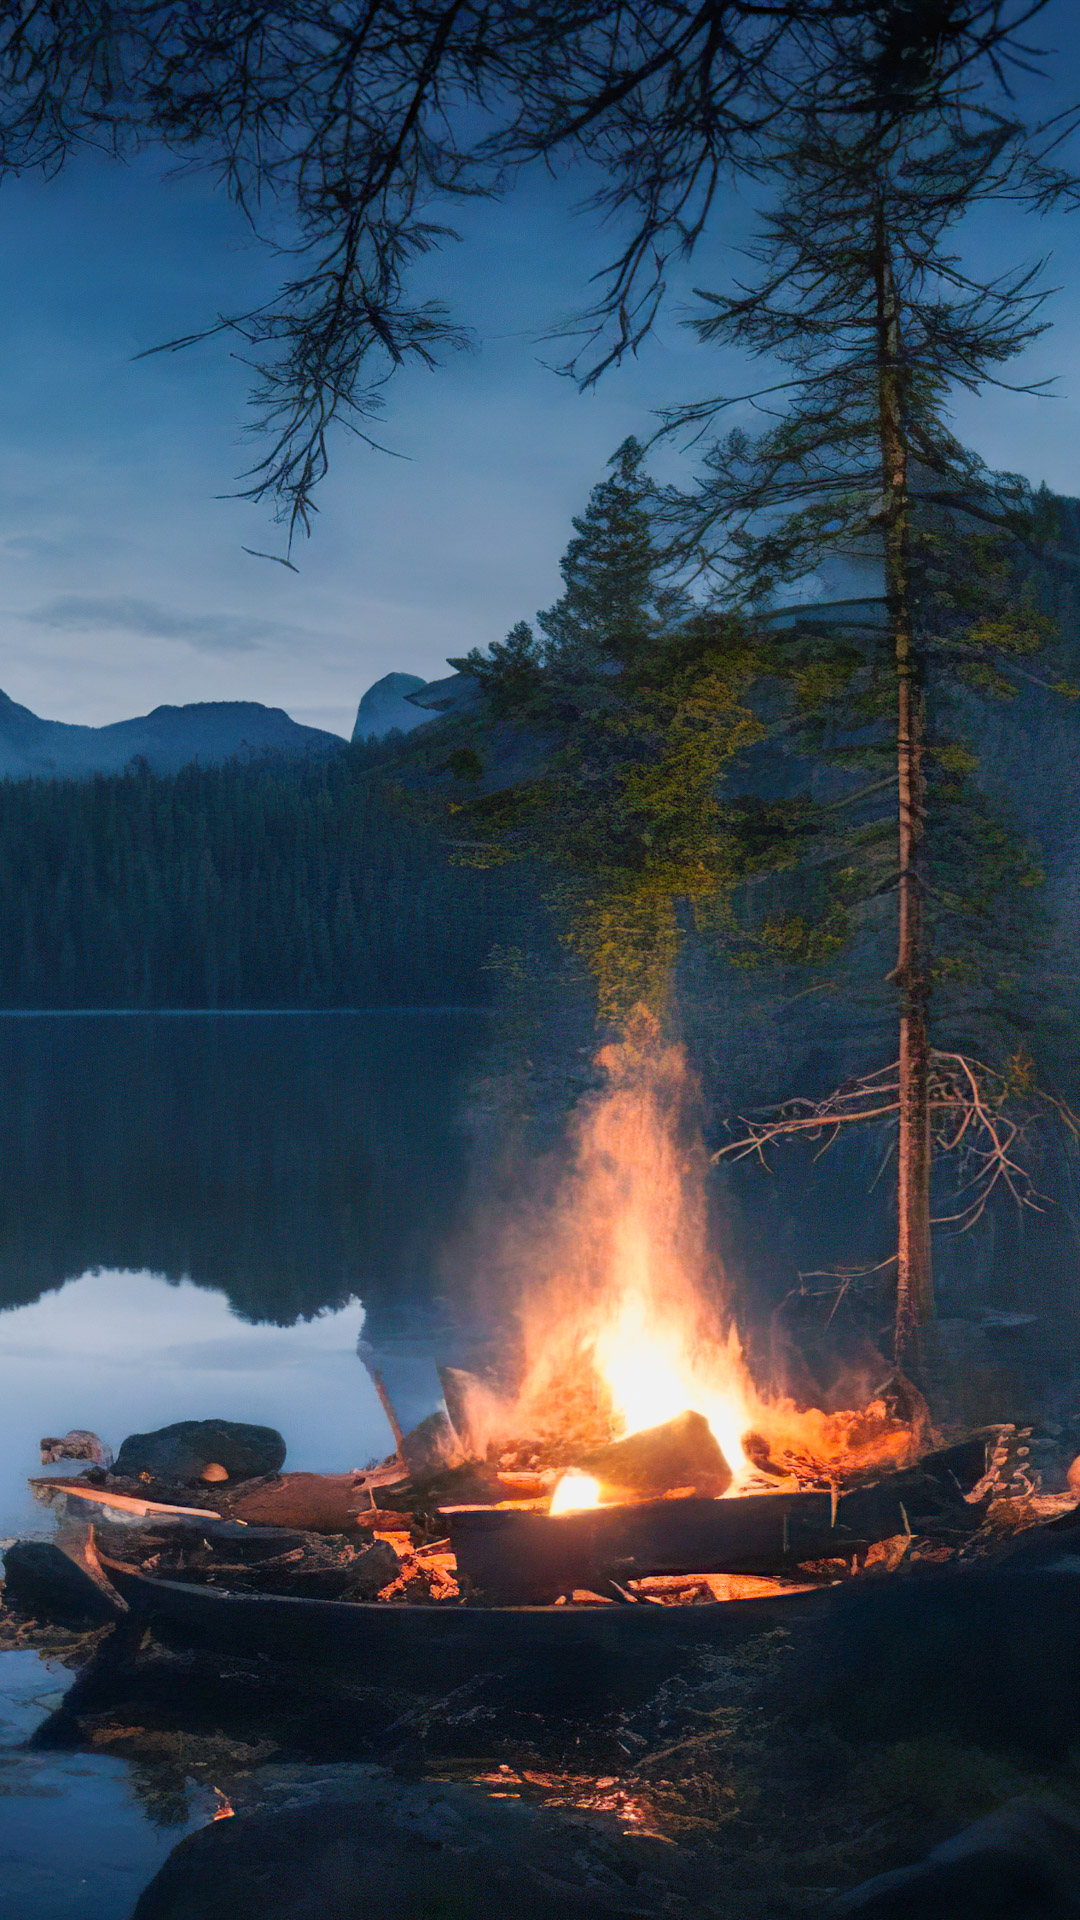 Ornez votre iPhone avec notre fond d'écran de paysage de haute qualité, mettant en scène un campement paisible au bord d'un lac avec un feu de camp vacillant, entouré d'une forêt sauvage sombre.